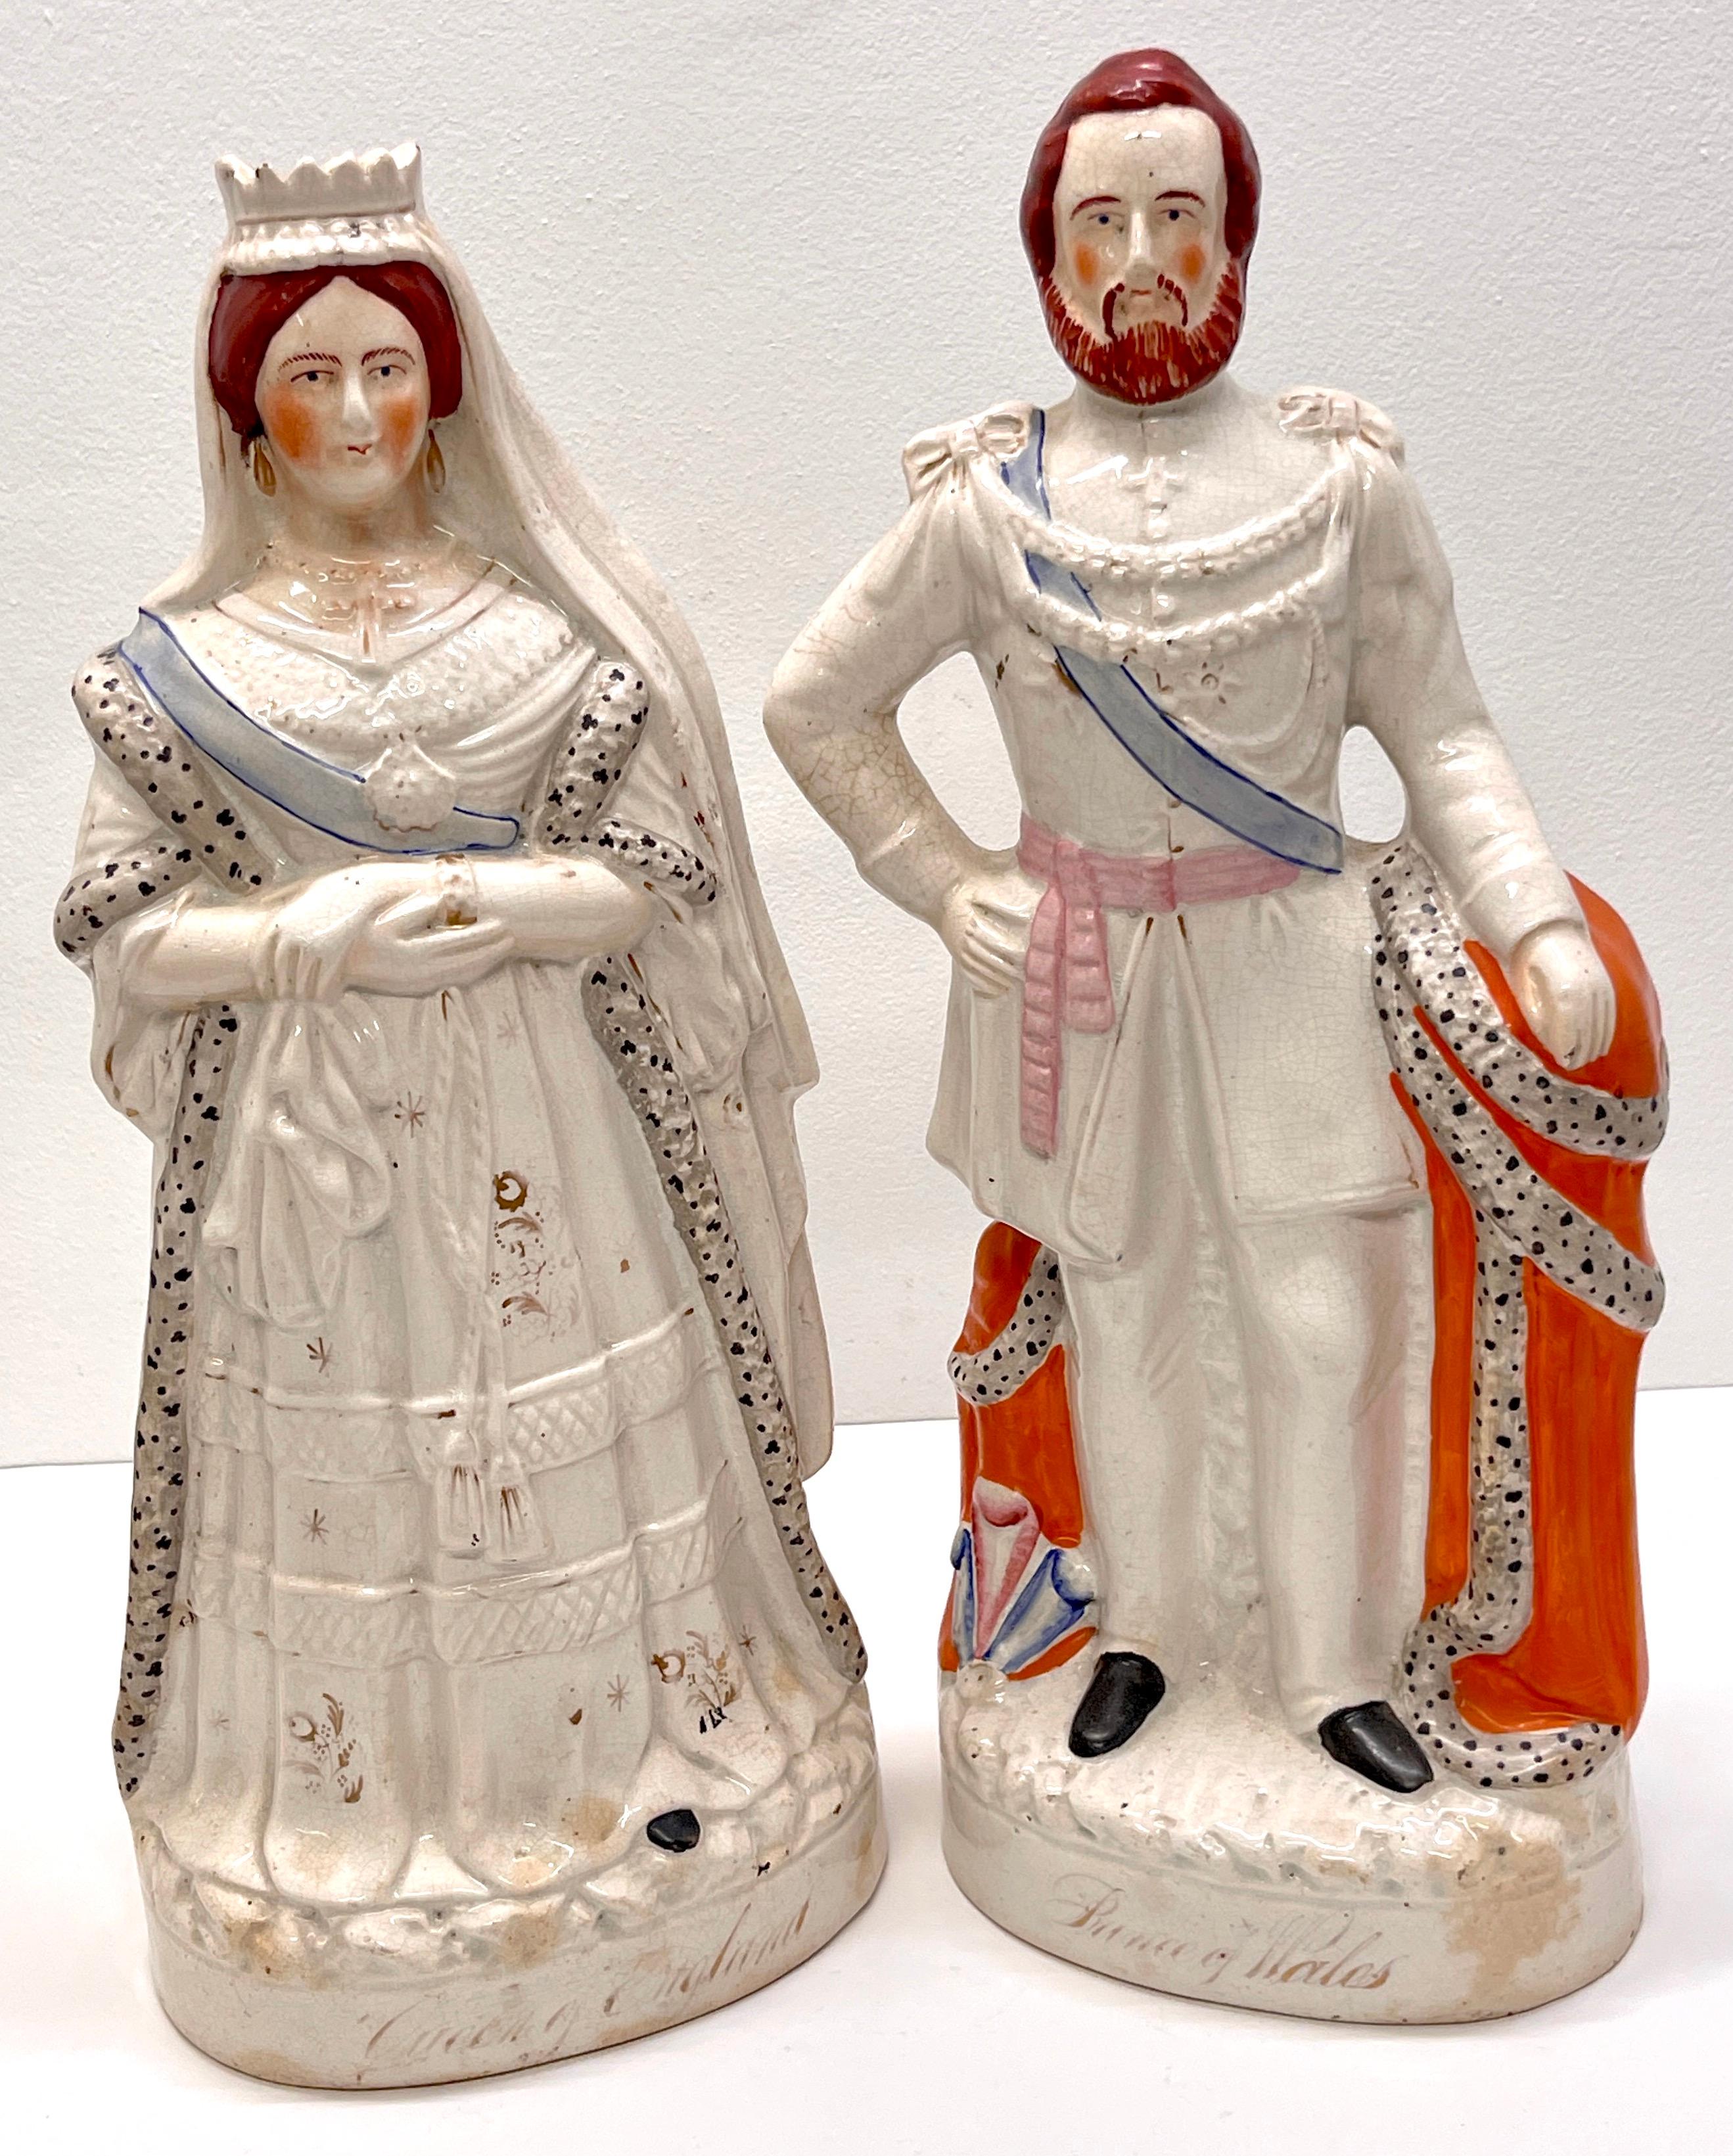 Figurines du 19e siècle en Staffordshire représentant la Reine Victoria et le Prince Albert (Grand)
Angleterre, vers 1860

Cette paire de figurines Staffordshire du XIXe siècle, d'une grande rareté, représente l'emblématique reine Victoria et le